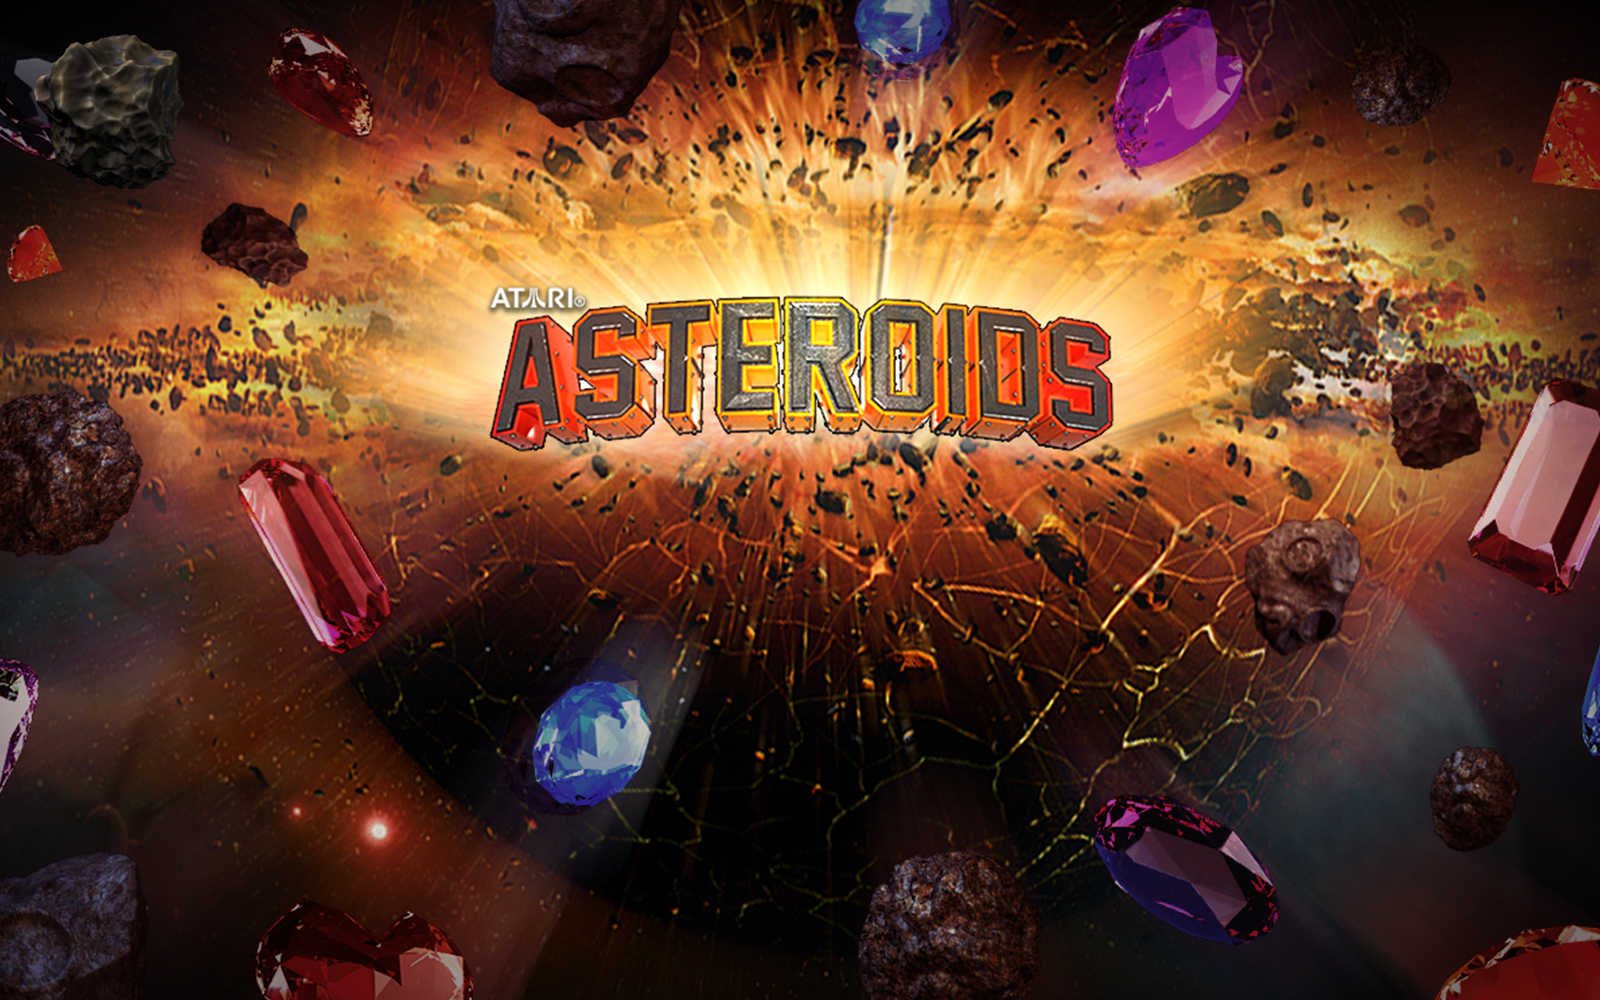 atari asteroids value